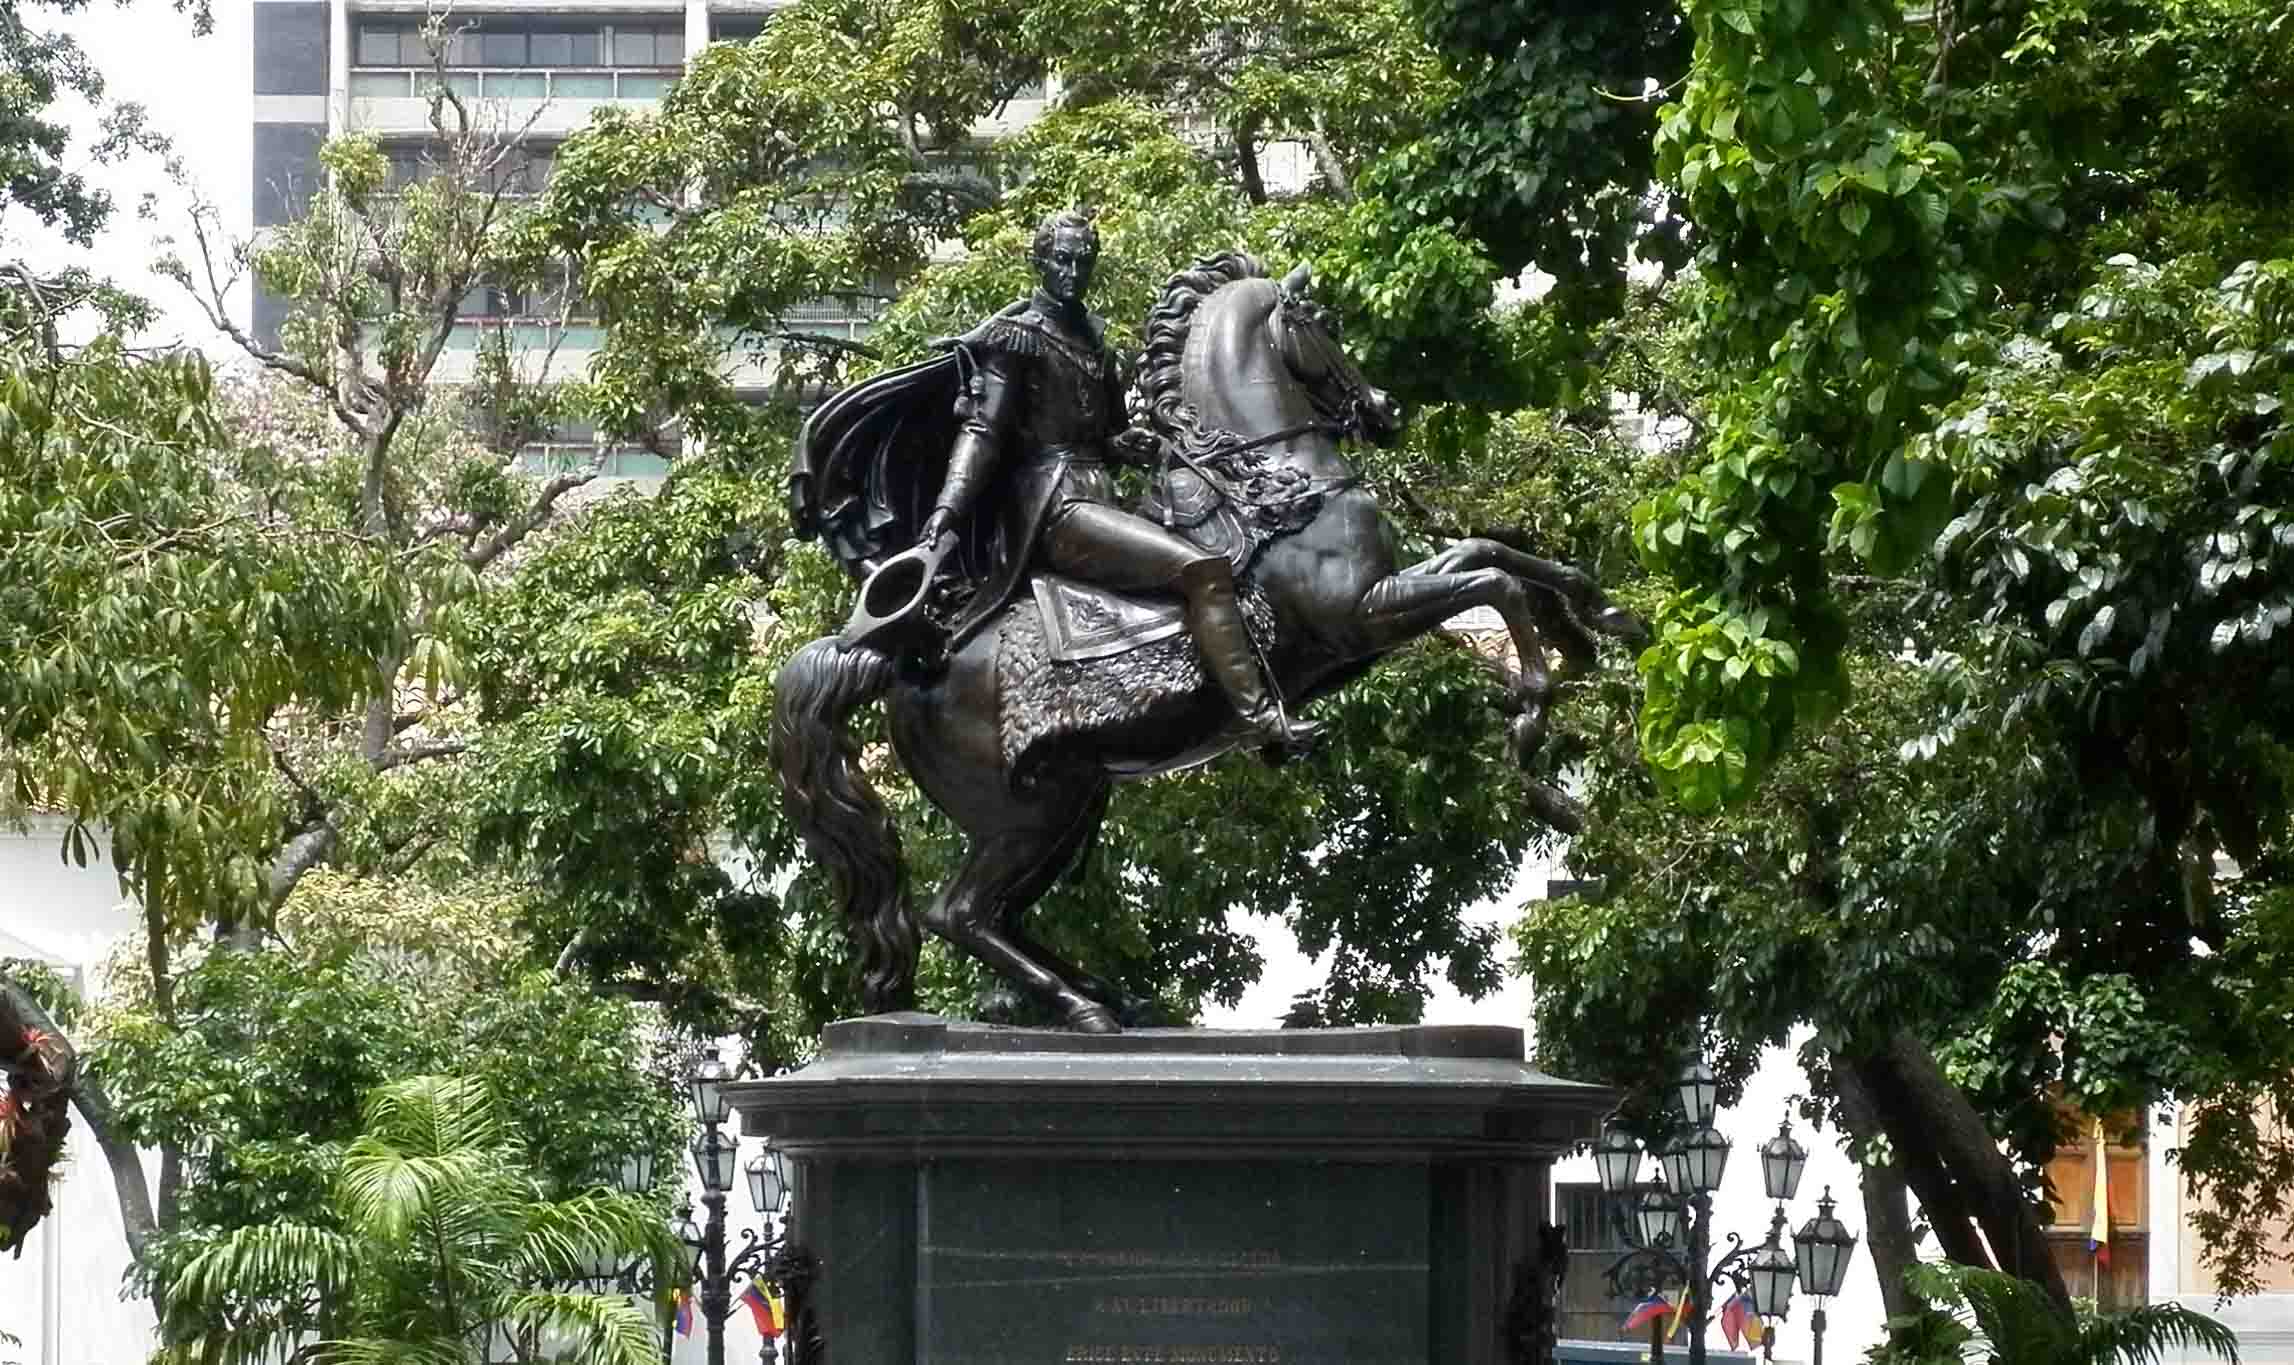 El Sumario - La estatua fue esculpida en bronce, con una aleación de 90% de cobre y cuenta con una altura de 4 metros que representa a Bolívar sobre un caballo erguido en sus patas traseras